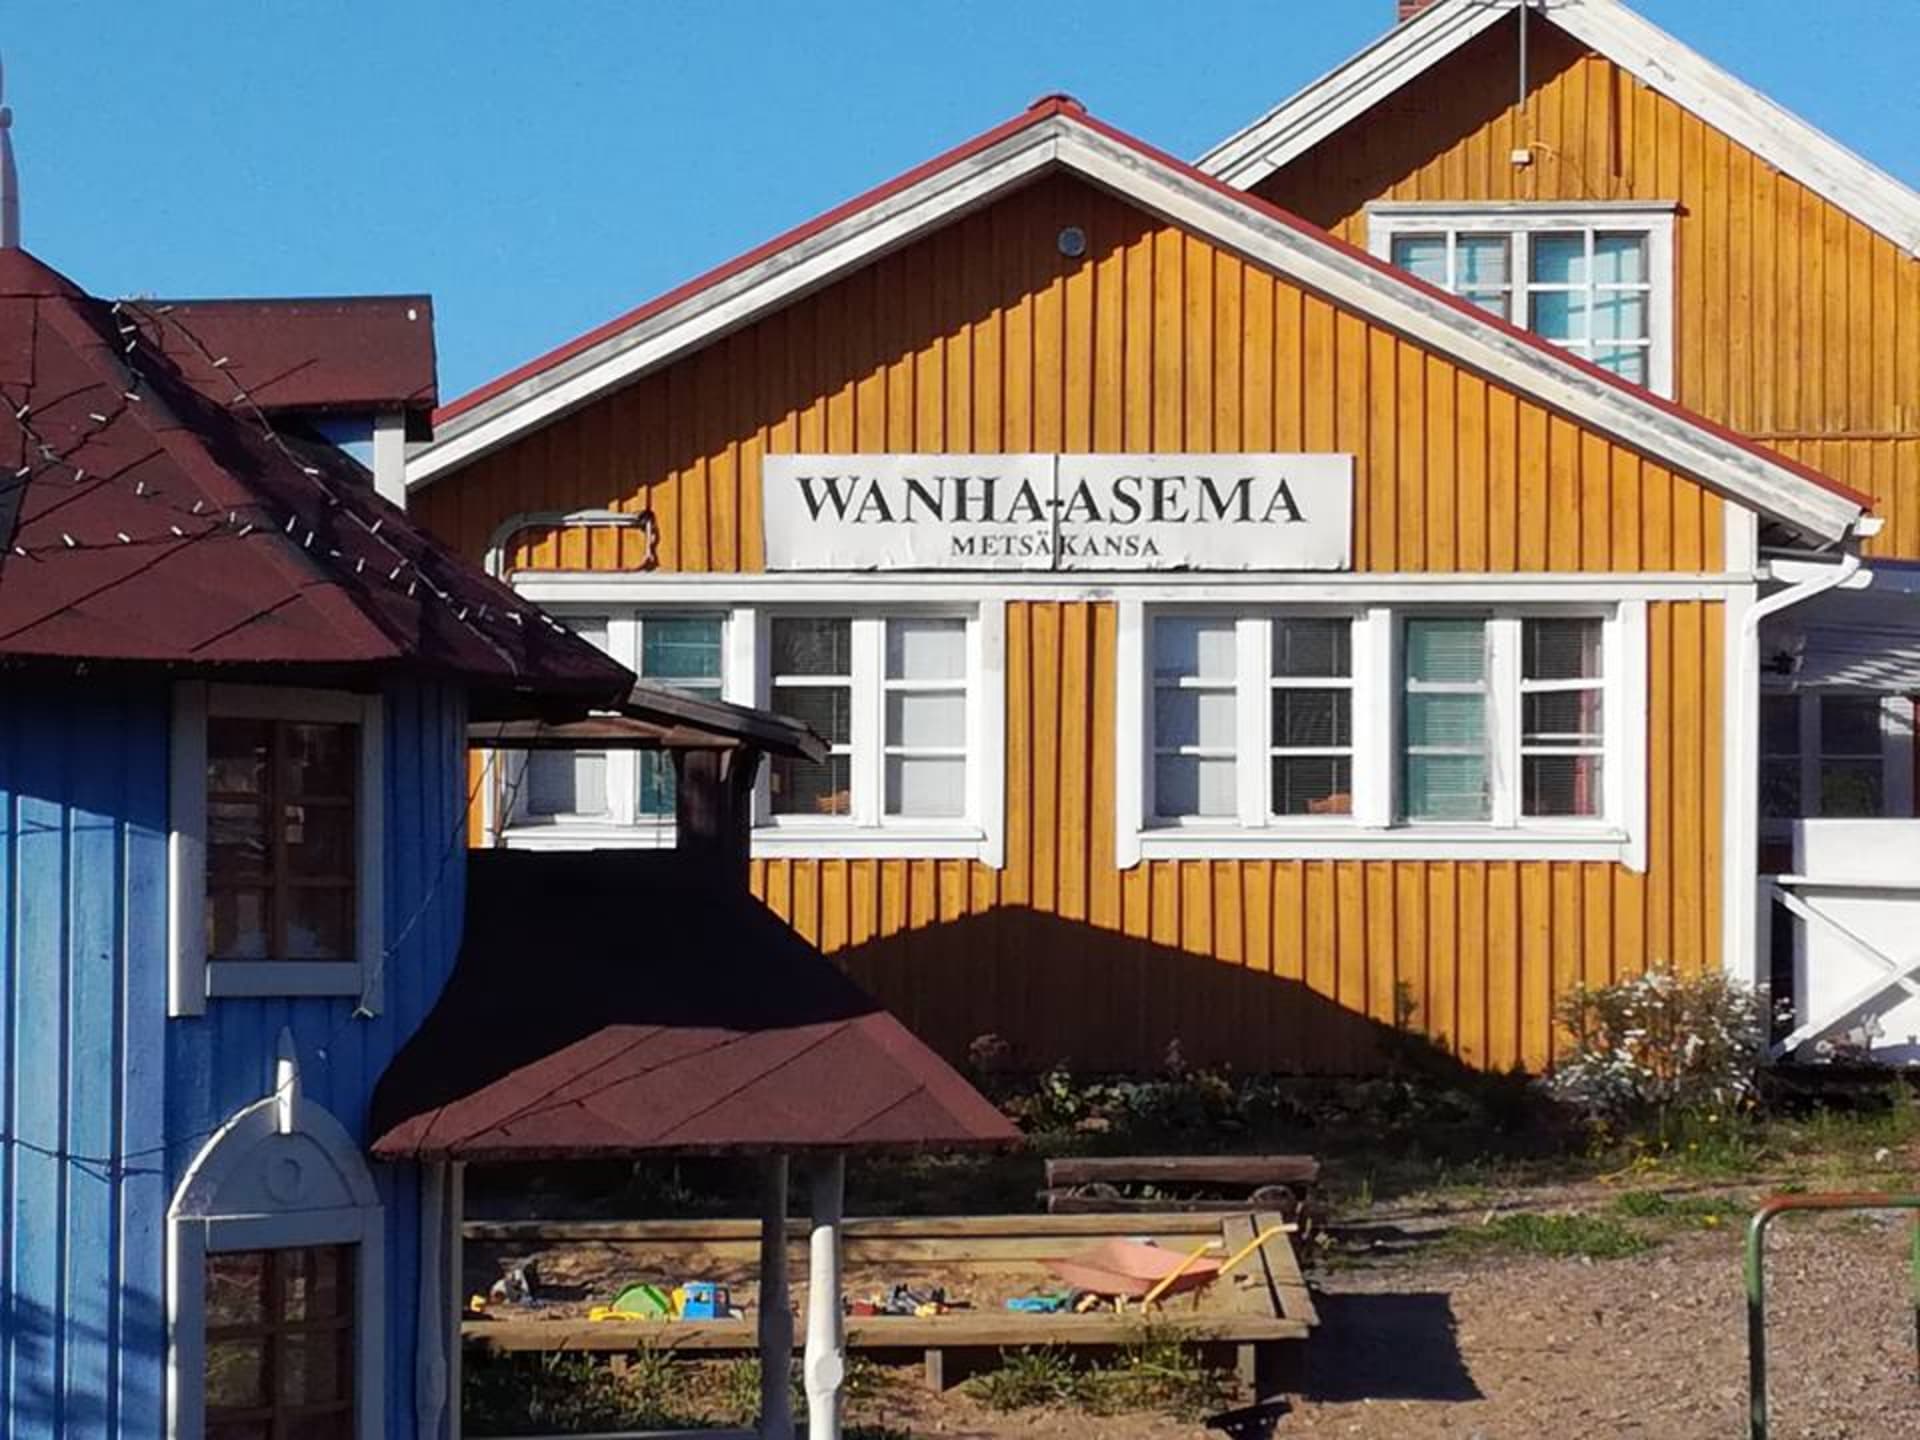 Wanha Asema is old railwaystation